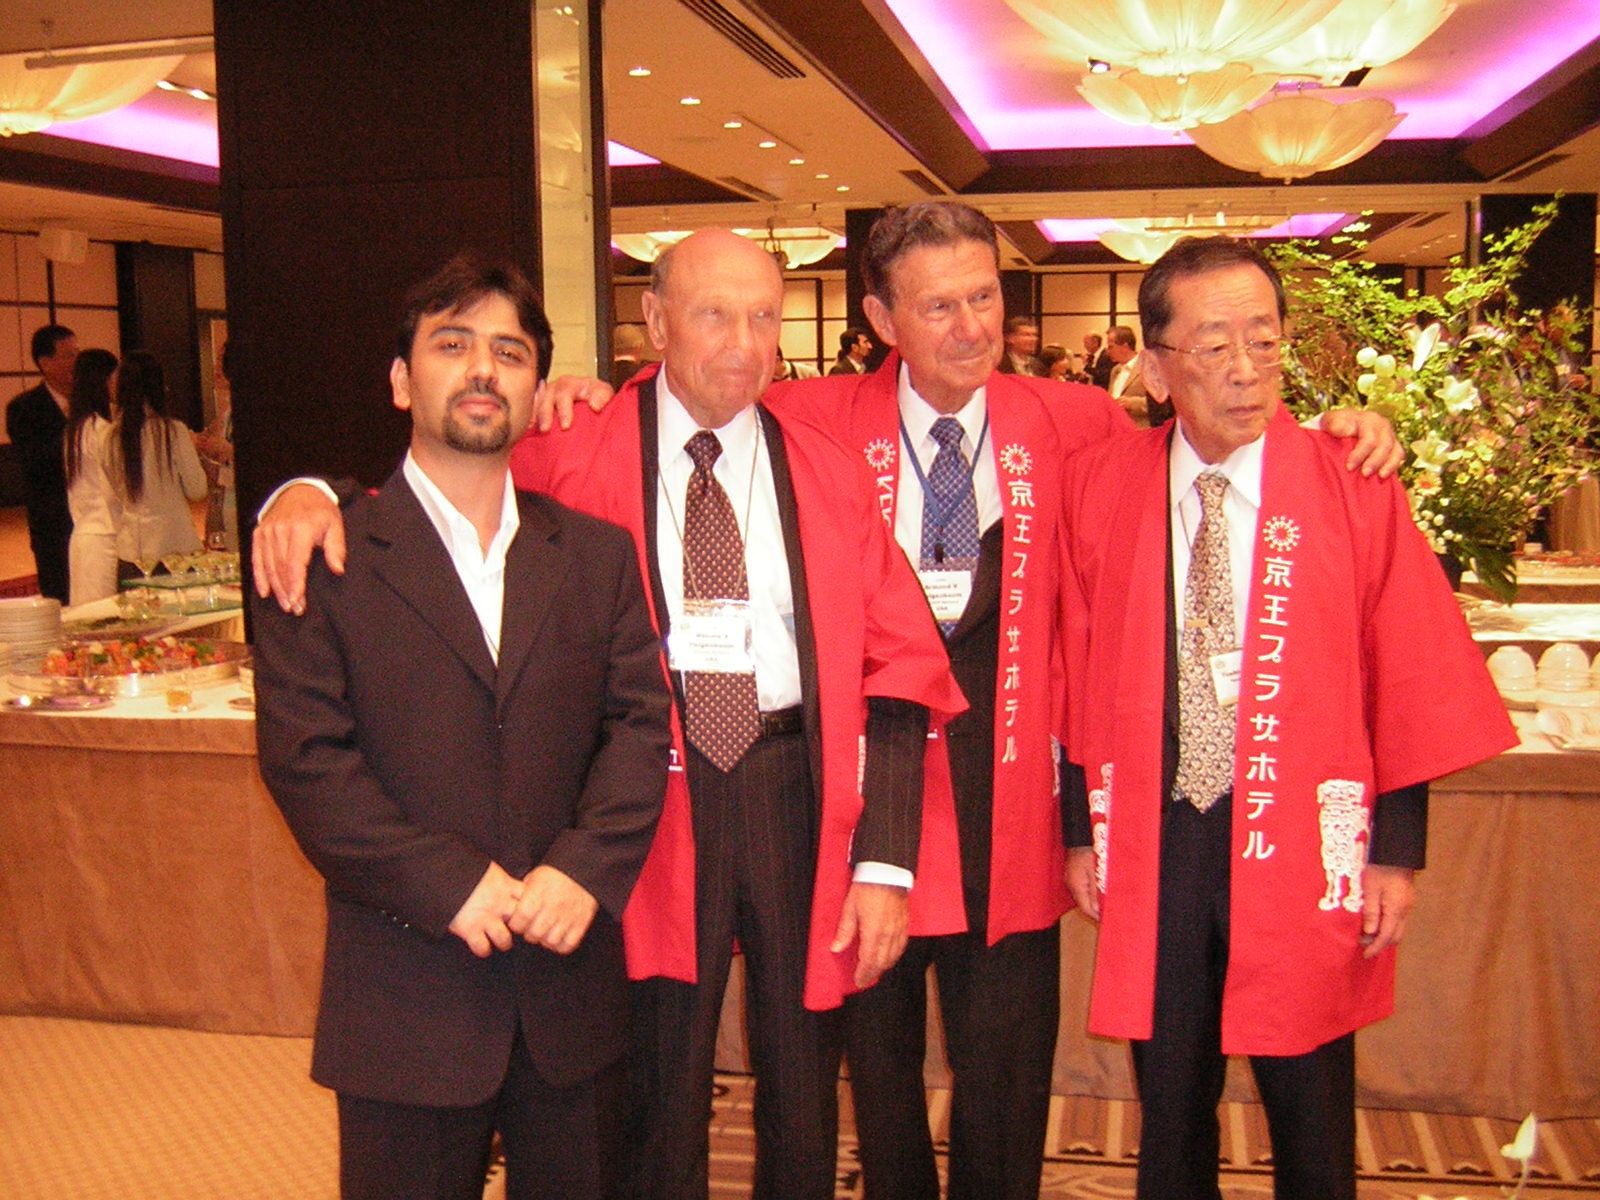 کنفرانس بین المللی کیفیت با فیگن بام از آمریکا- ژاپن 2003